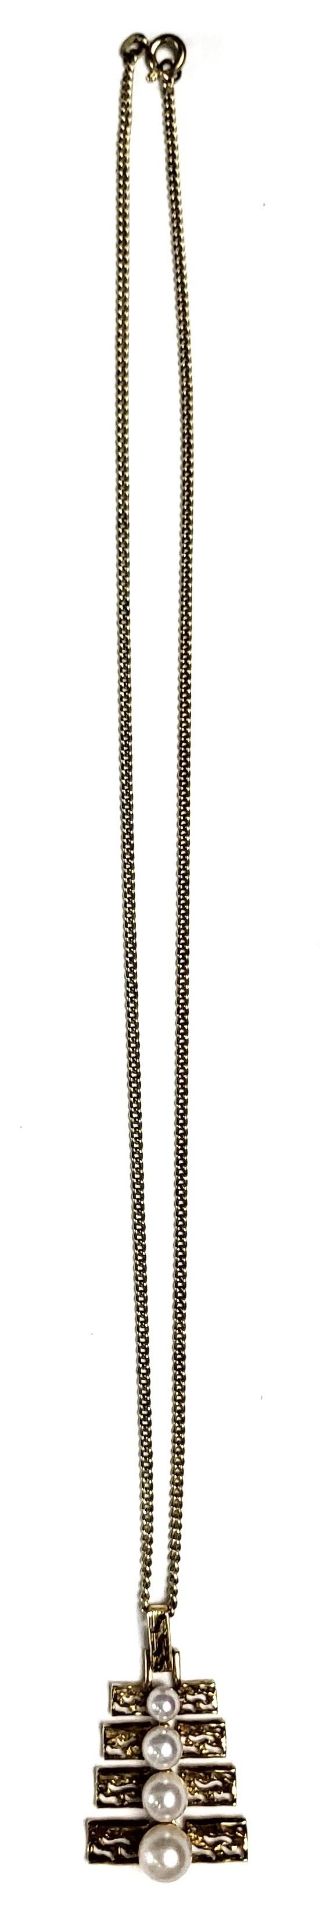 Halskette mit Perlenanhänger - Image 2 of 4